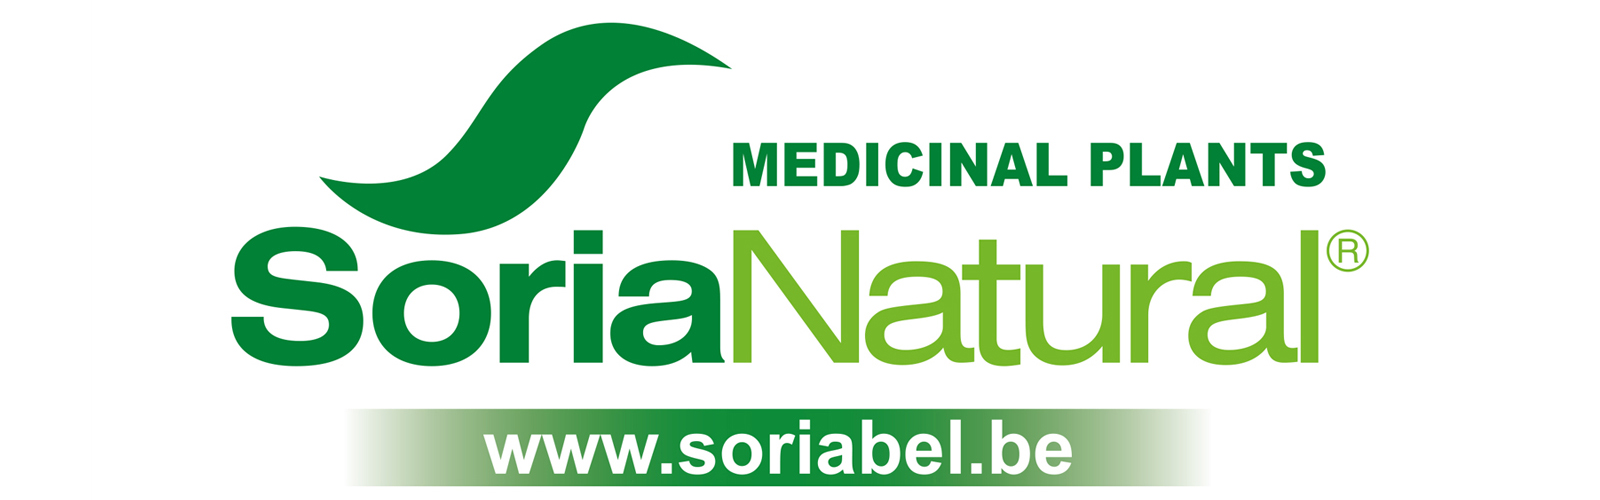 Logo-Soria-Natural-medicinal-plants---800x250